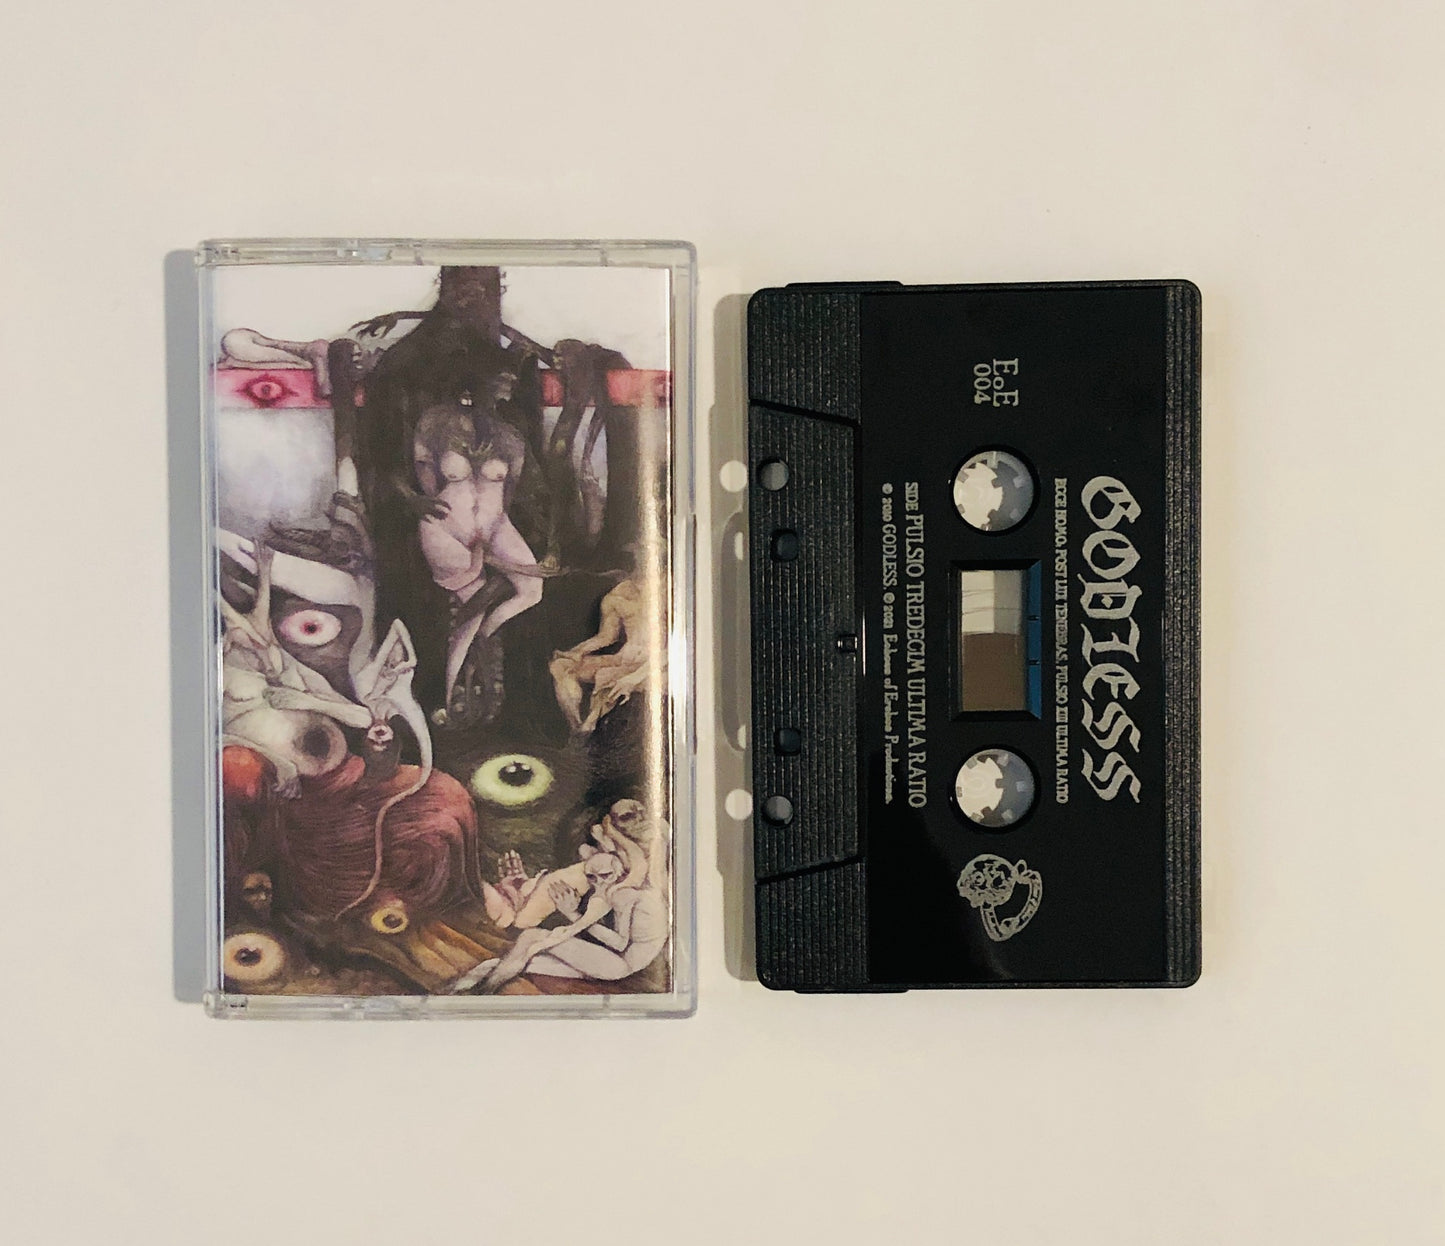 Godless (Chile) "Ecce Homo: Post Lux Tenebras, Pulsio XIII Ultima Ratio" - Pro Tape